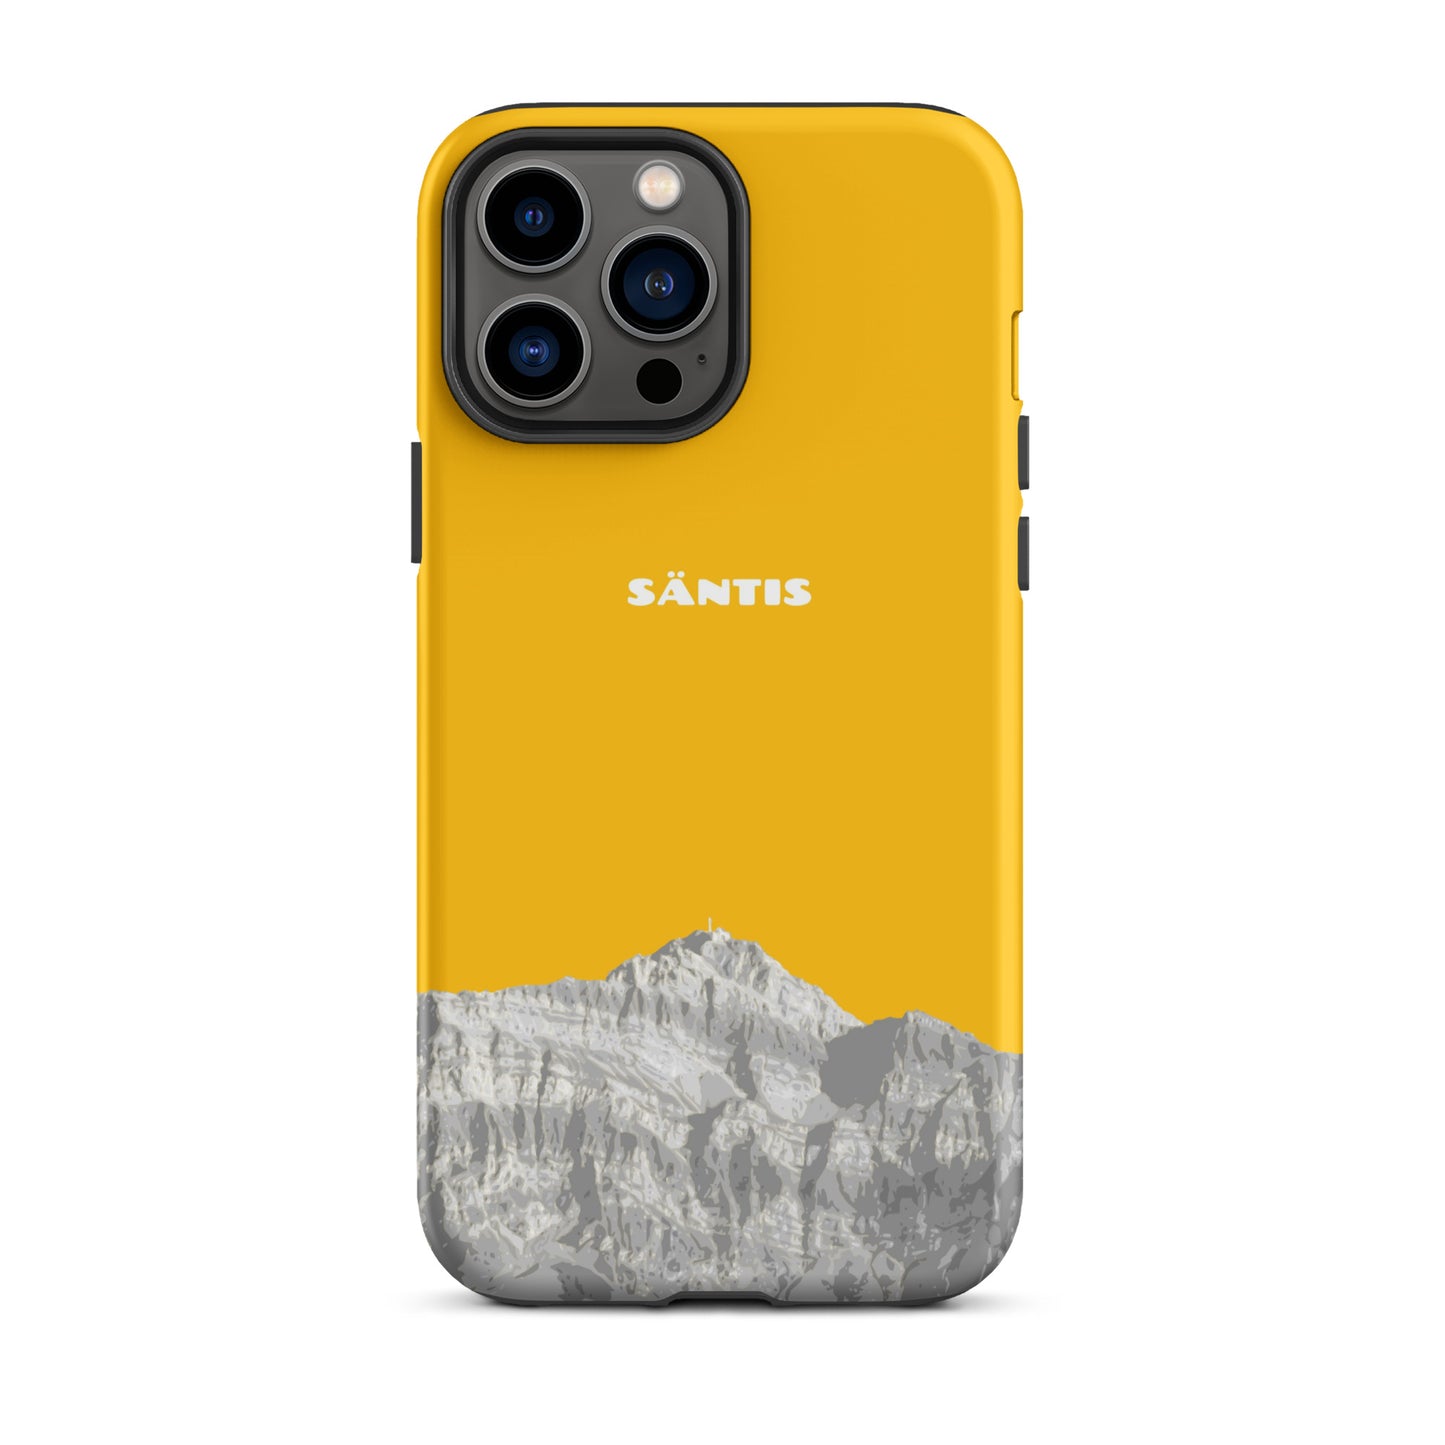 Hülle für das iPhone 13 Pro Max von Apple in der Farbe Goldgelb, dass den Säntis im Alpstein zeigt.